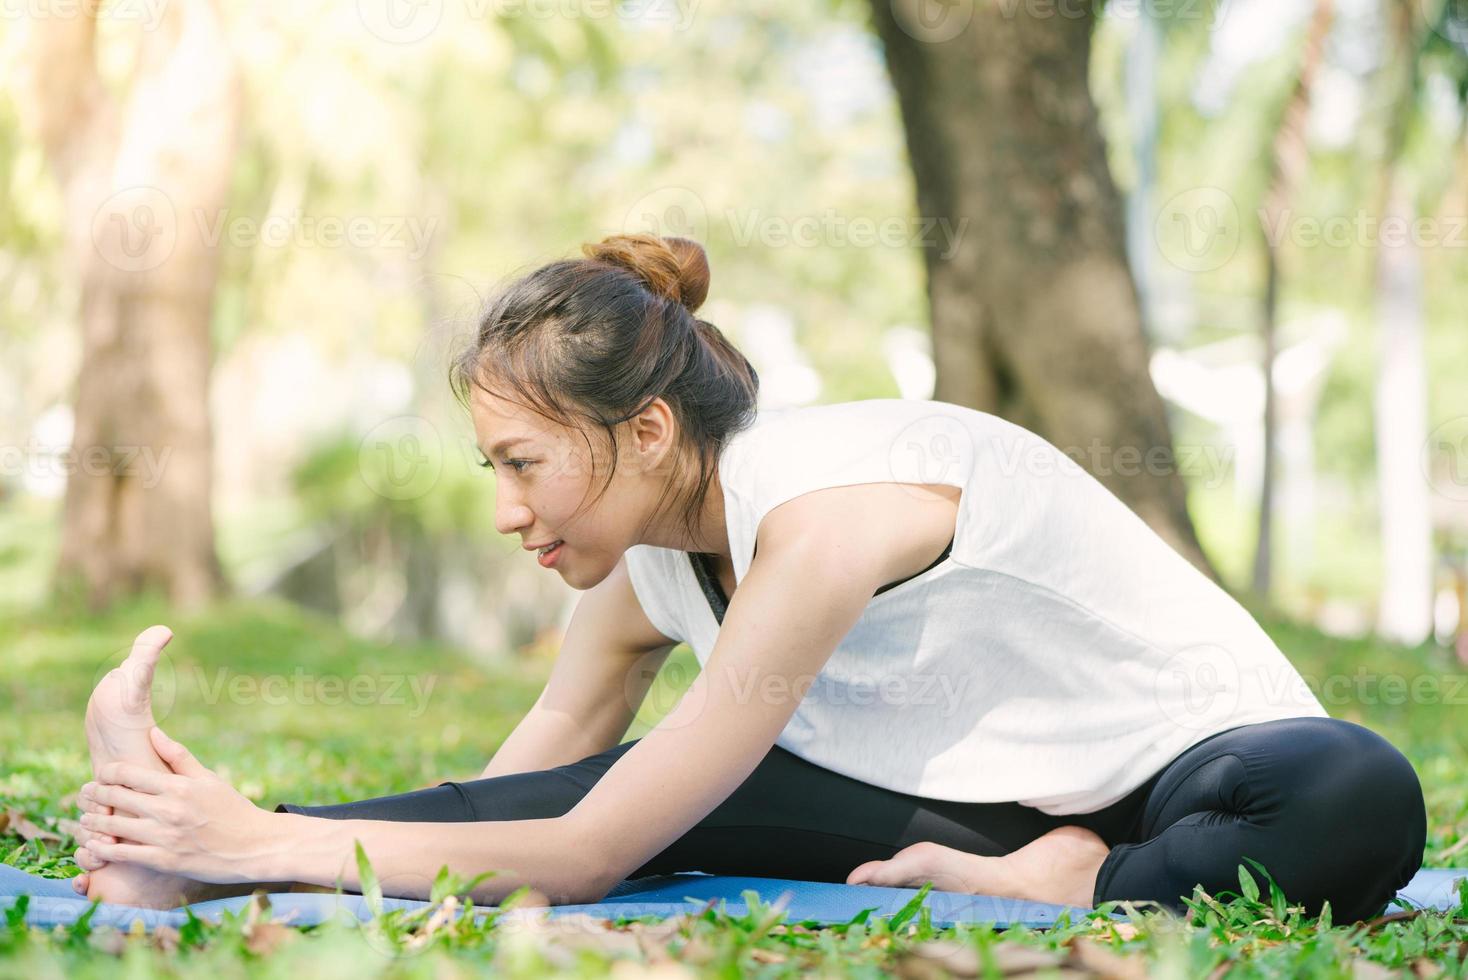 jonge Aziatische vrouw yoga buitenshuis blijf kalm en mediteert tijdens het beoefenen van yoga om de innerlijke rust te verkennen. yoga en meditatie hebben goede voordelen voor de gezondheid. yoga sport en een gezonde levensstijl concept. foto